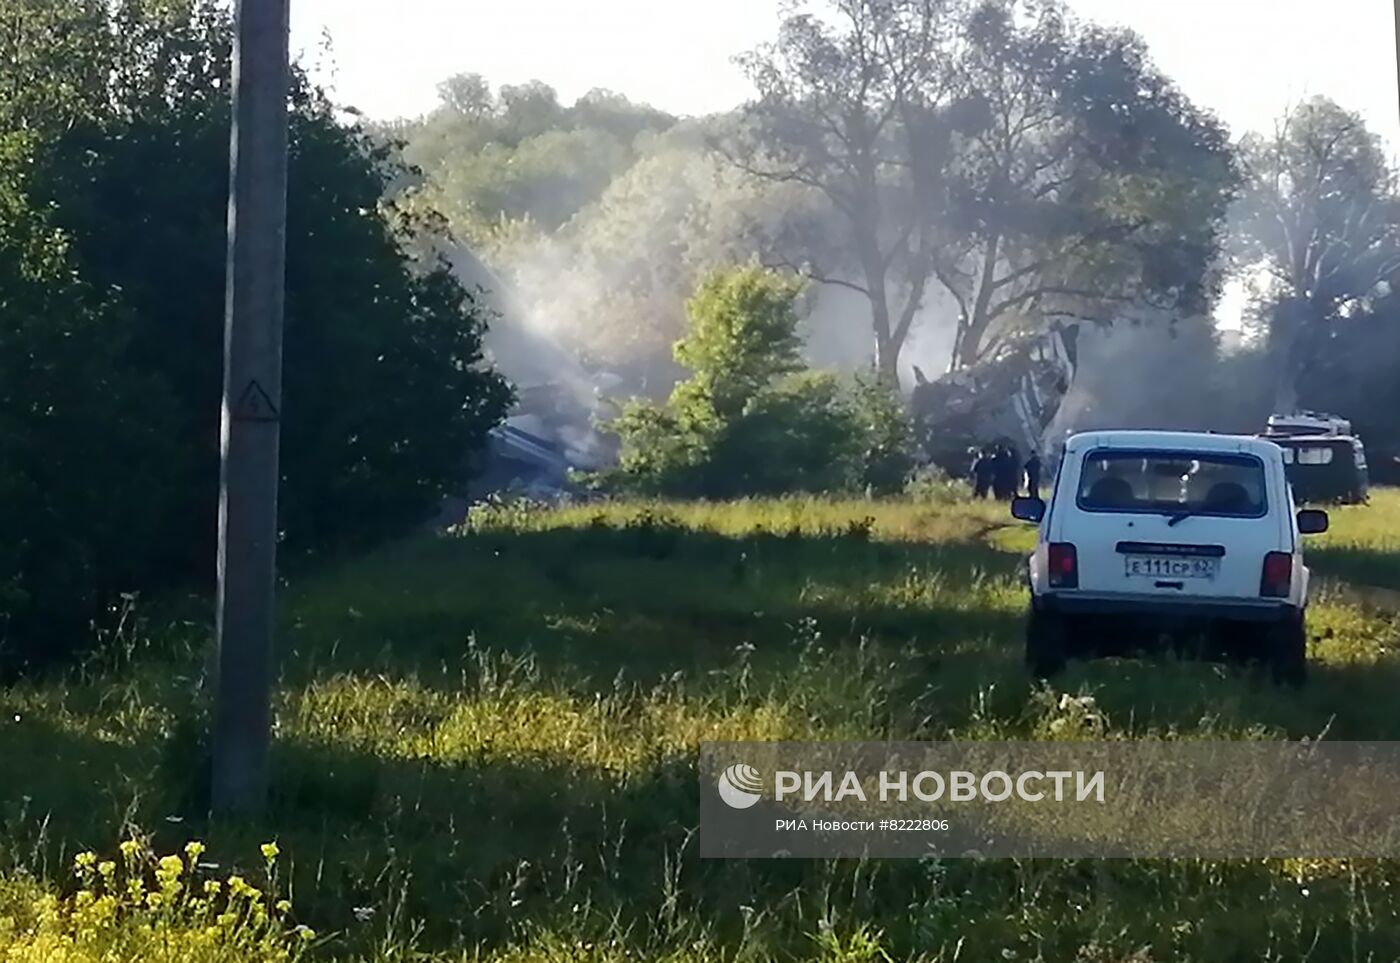 Военно-транспортный самолет Ил-76 совершил жесткую посадку в Рязанской области